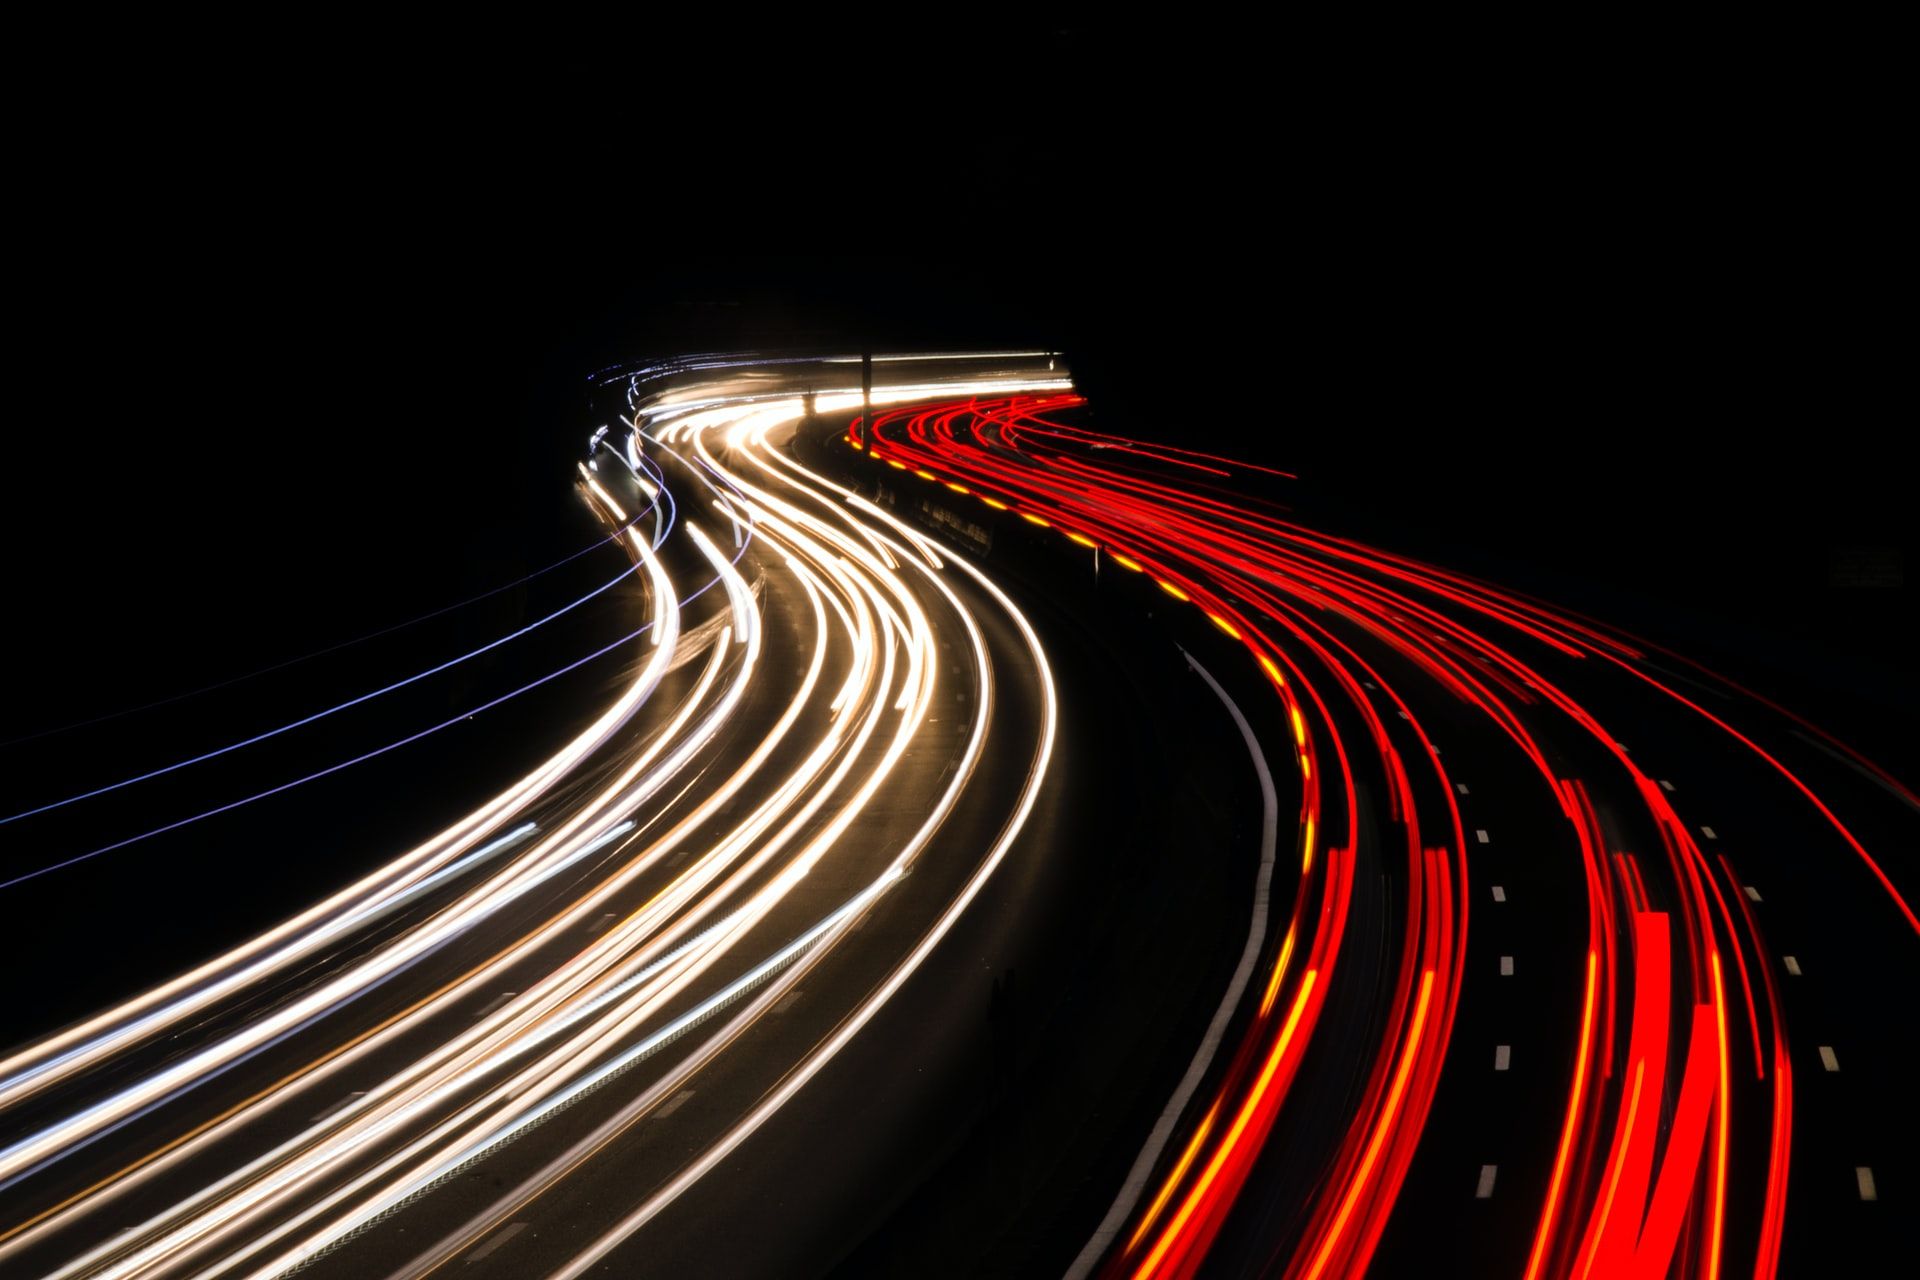 lightshot of red and white traffic - È più veloce spostare o copiare i file? Come mai?